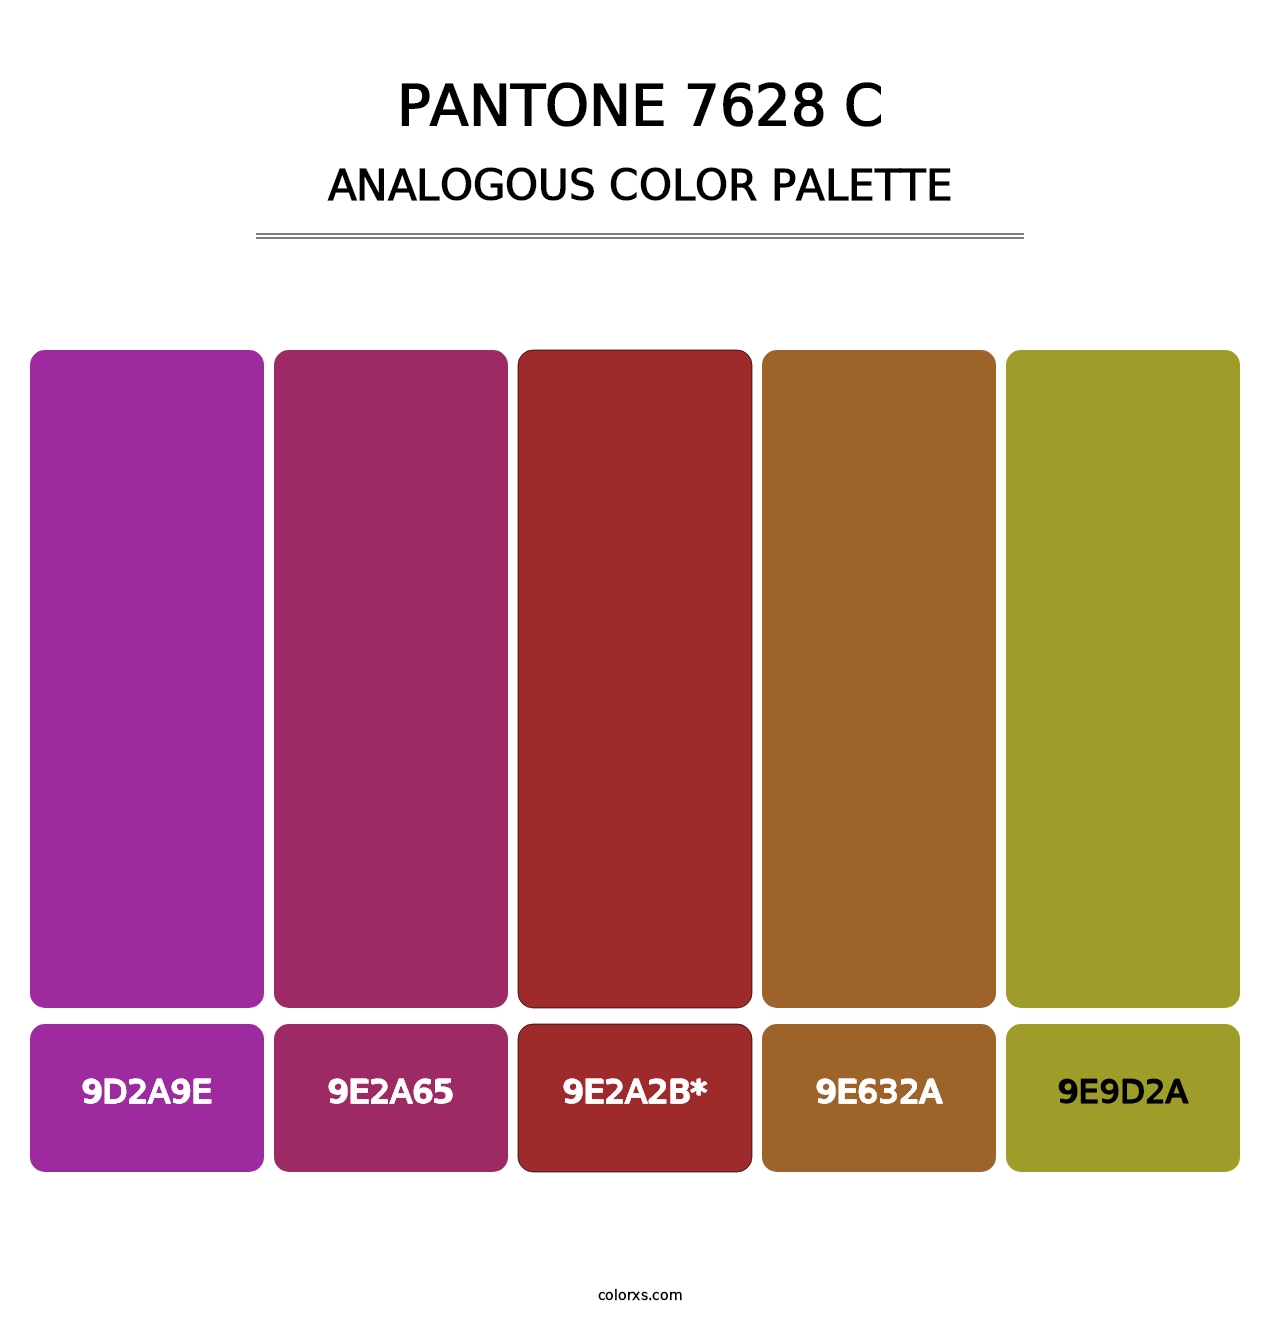 PANTONE 7628 C - Analogous Color Palette